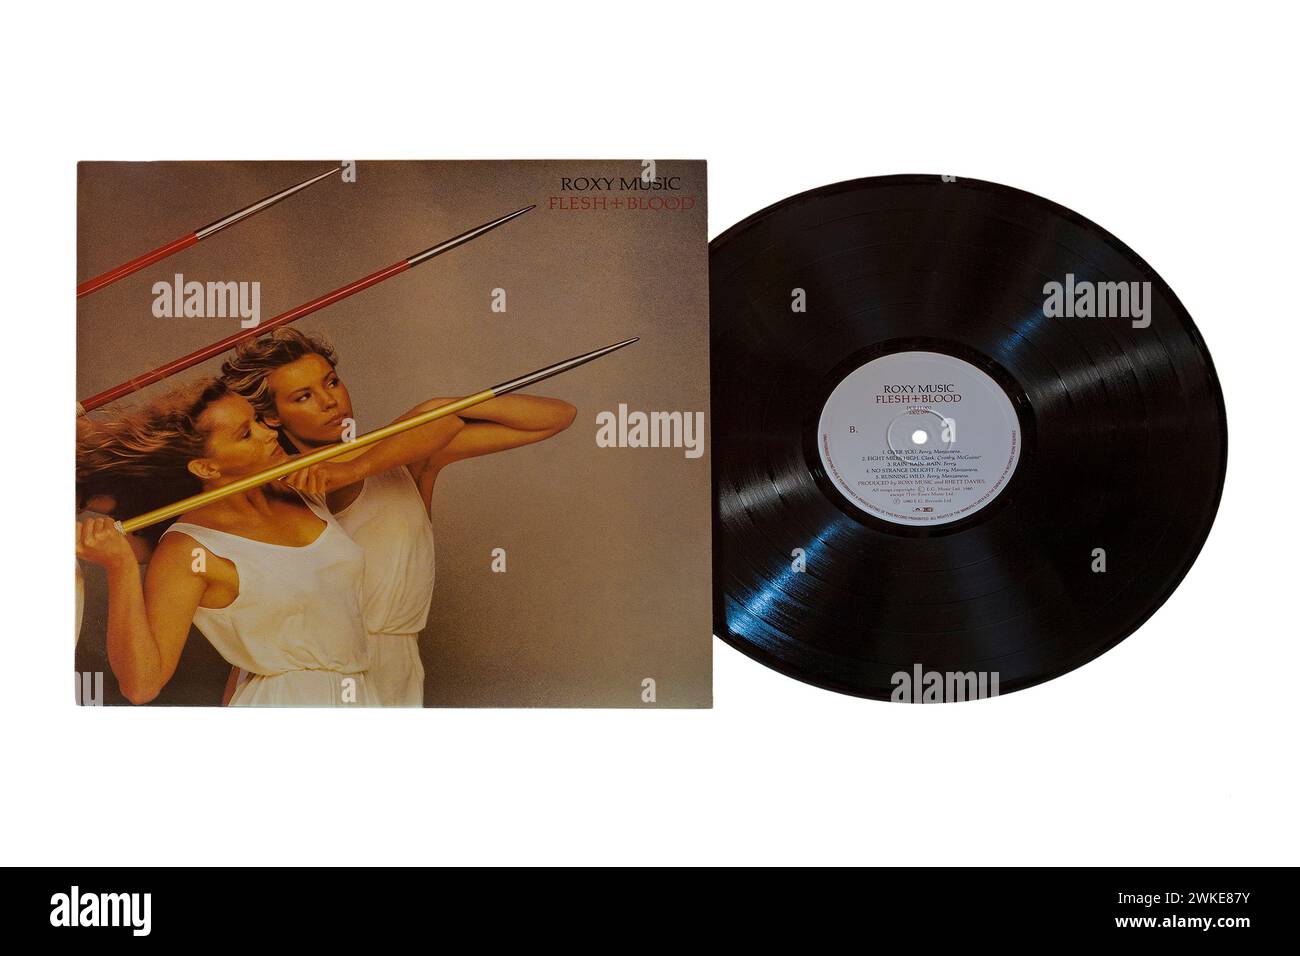 Roxy Music Flesh + Blood, Flesh and Blood, album vinyle album LP couverture isolée sur fond blanc - 1980 Banque D'Images